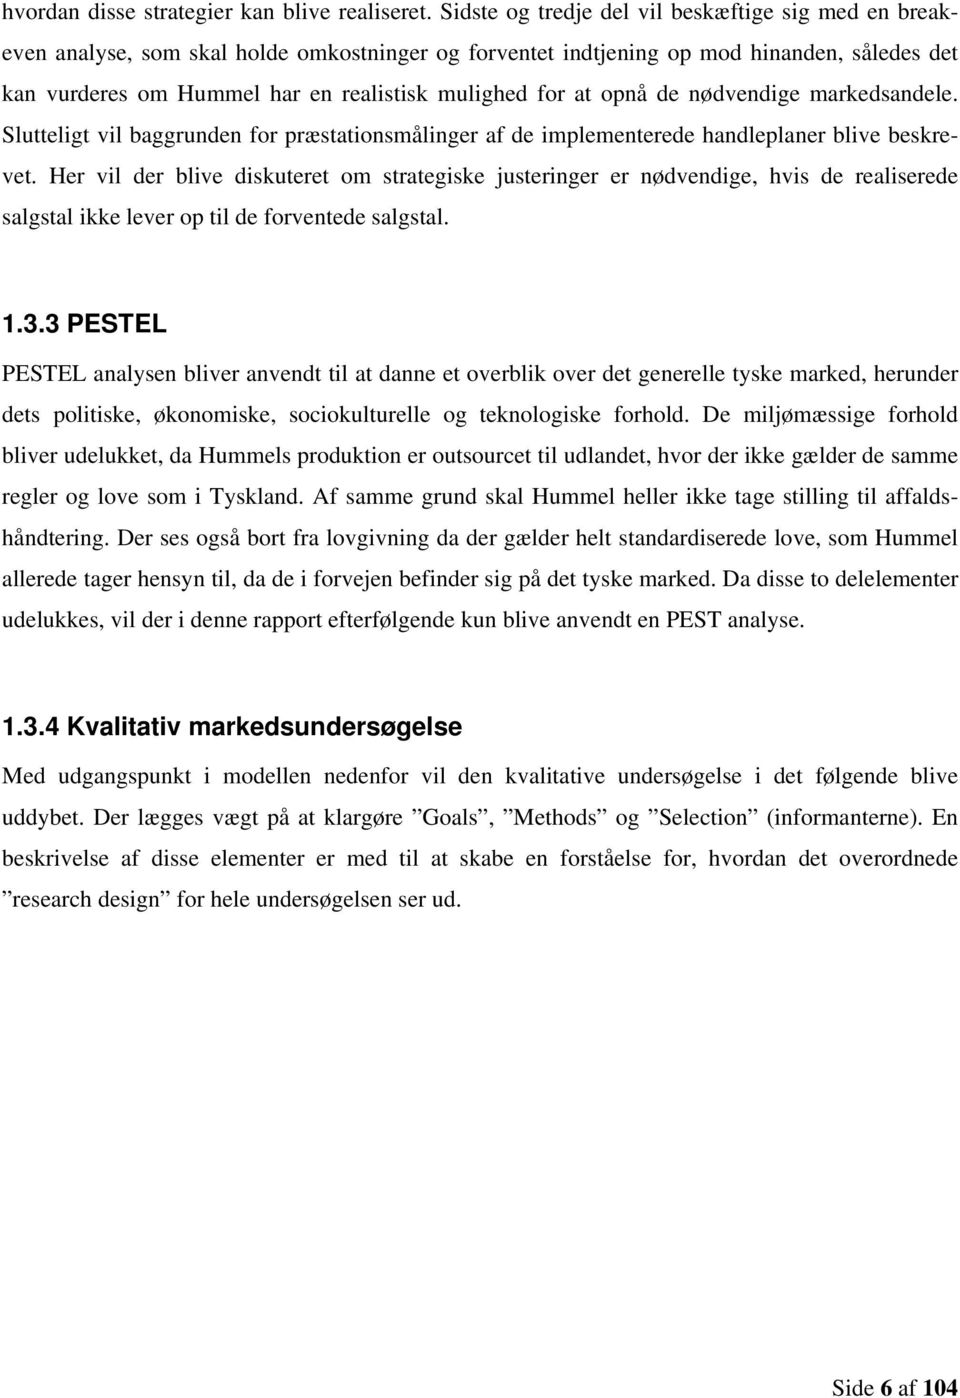 Hummels potentielle indtrængning på tyske marked for og -sko - PDF Gratis download